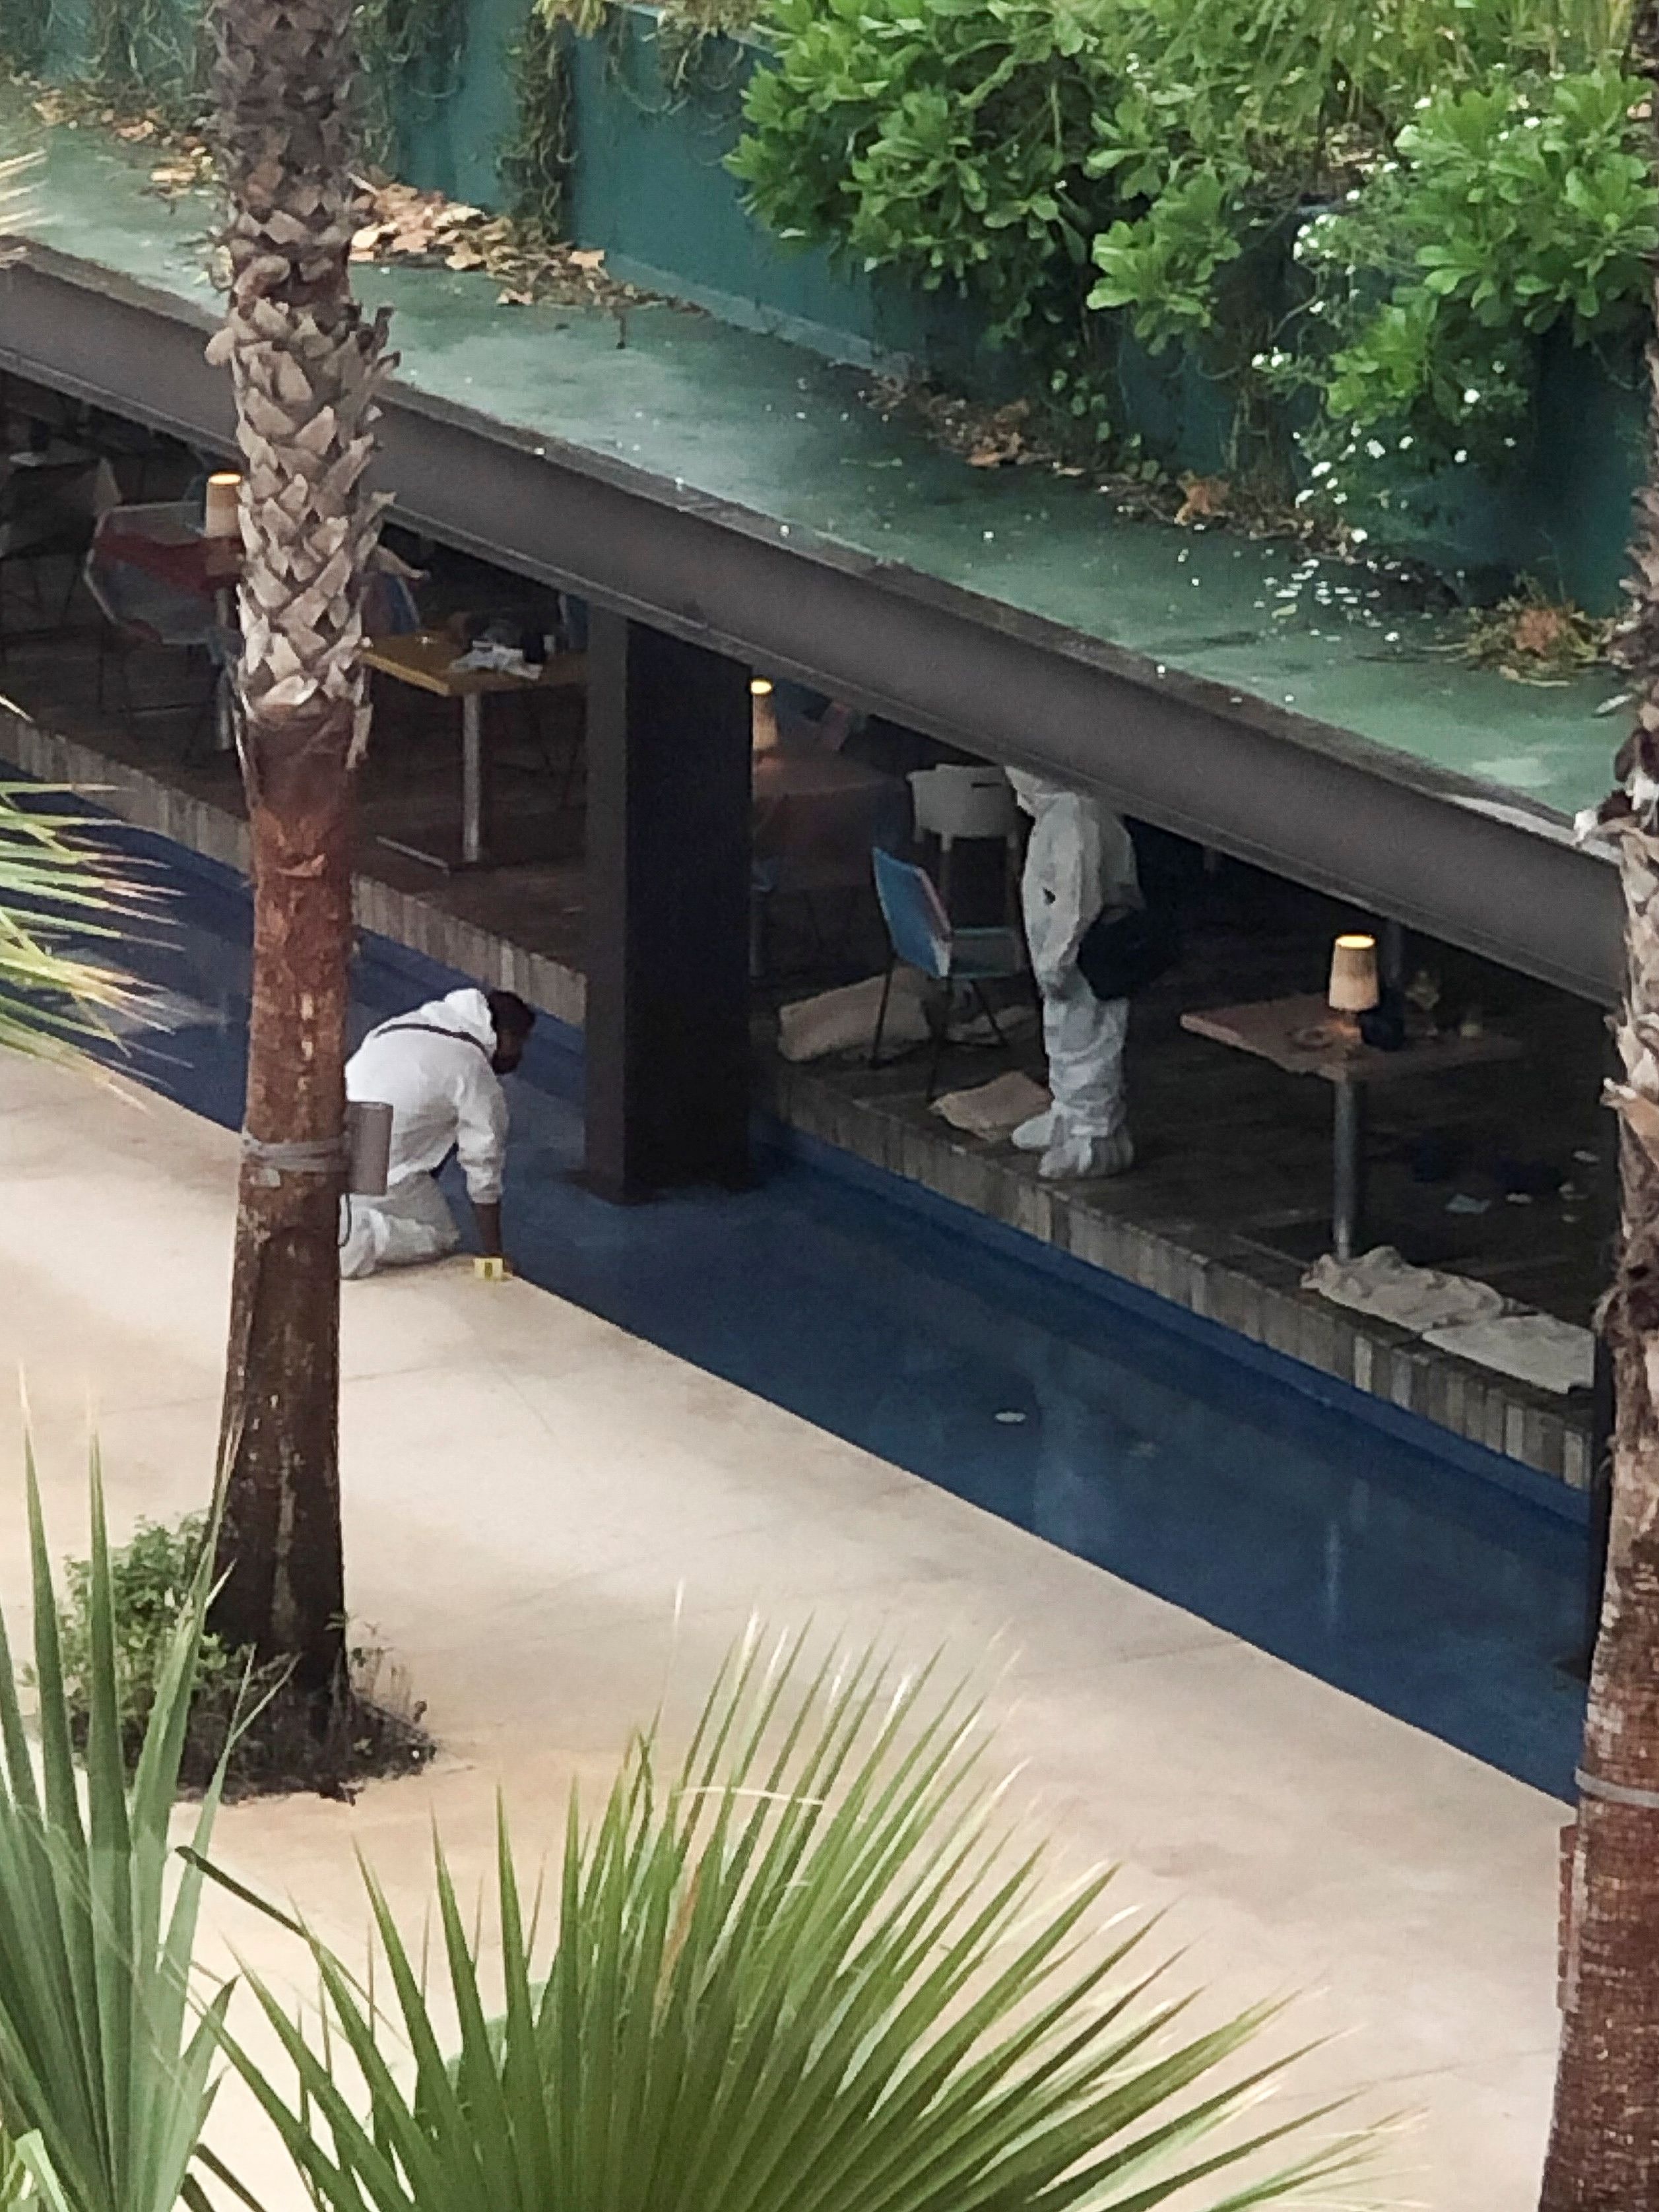 Técnicos forenses trabajan en una escena donde tres ciudadanos canadienses resultaron heridos de bala en el Hotel Xcaret, en Playa del Carmen, México, 21 de enero de 2022. REUTERS/Stringer 